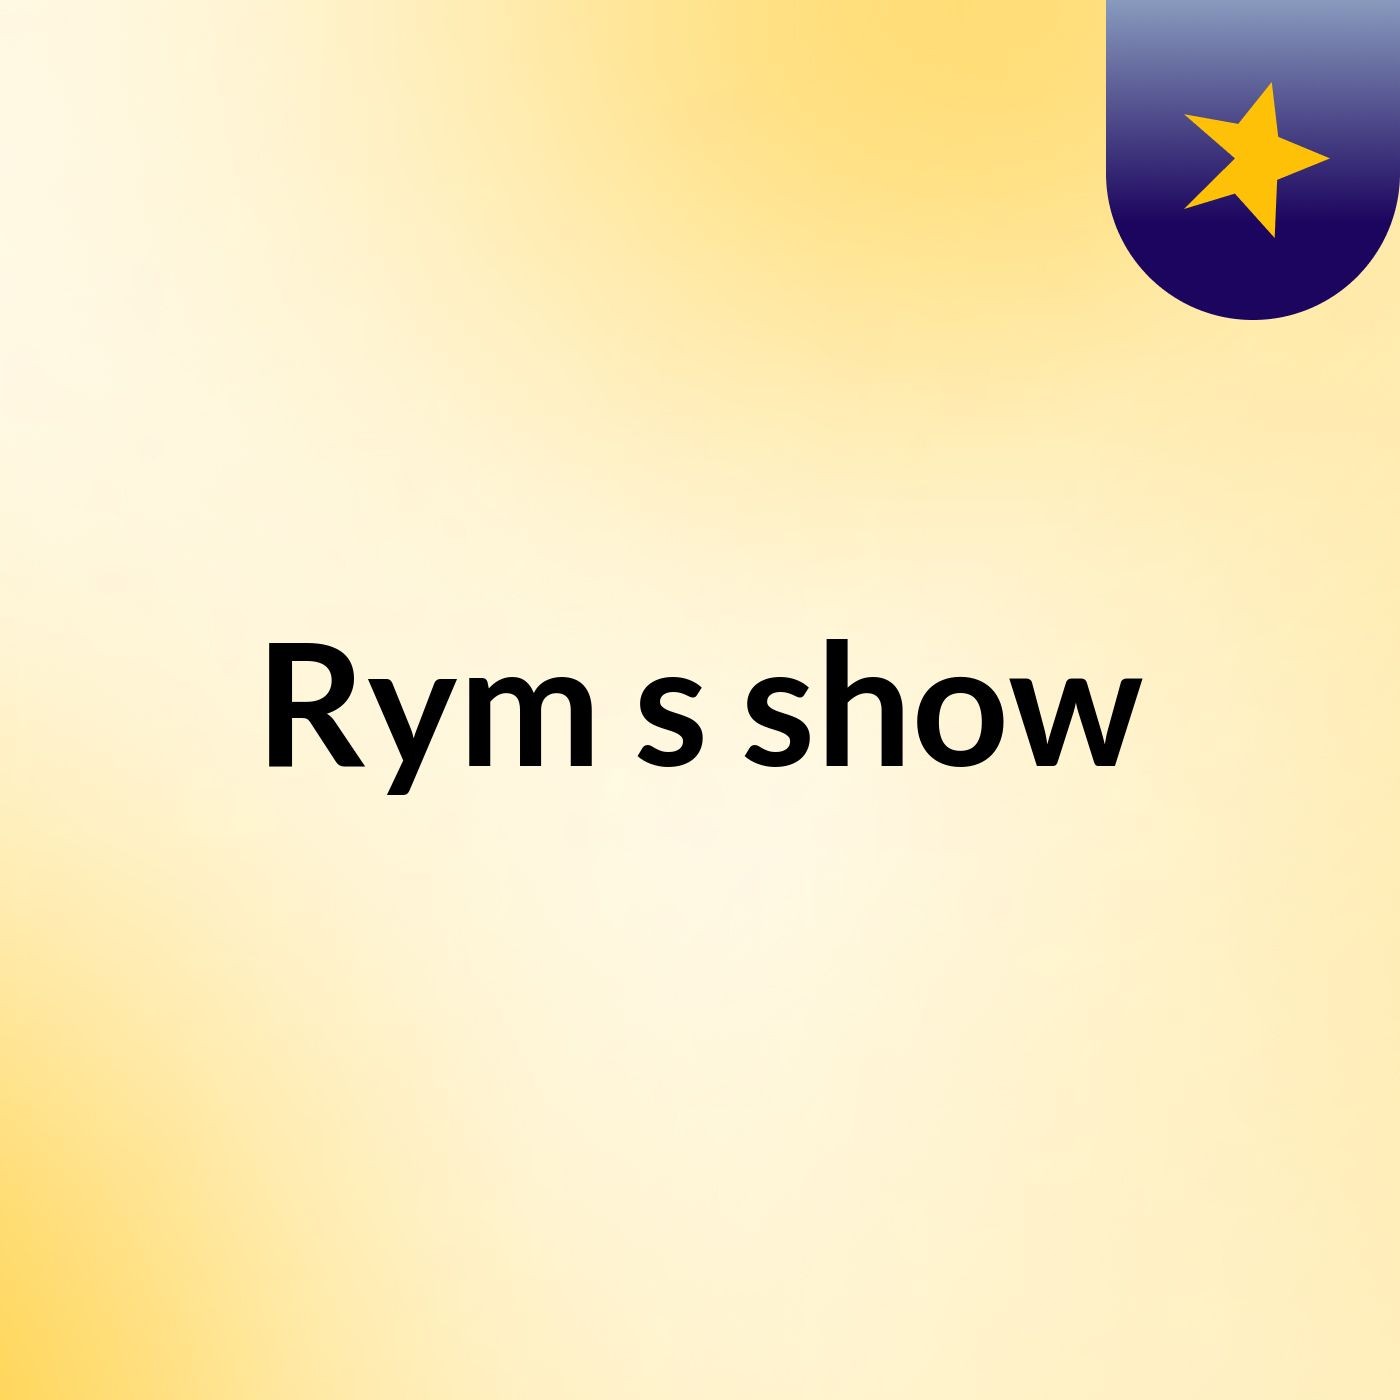 Rym's show